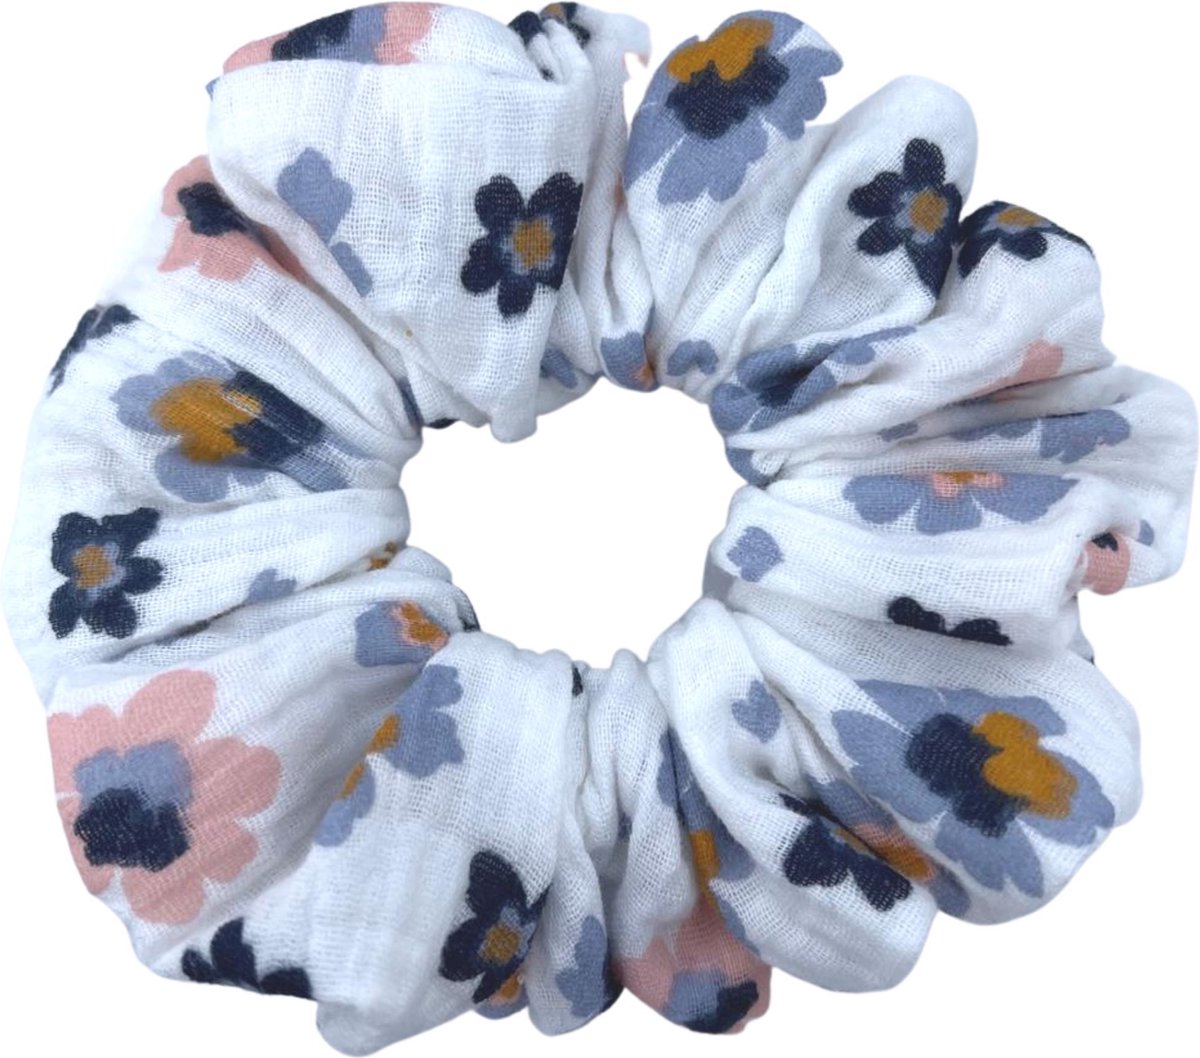 XL - Scrunchie - Handmade - Oversized - Wit met blauw roze bloemen - Diameter circa 16 cm - 100% Mousseline - Zacht voor je haar - Leuke variant voor haarelastiekjes - Haaraccessoires - haarwokkel - Fashiongoodiez.nl